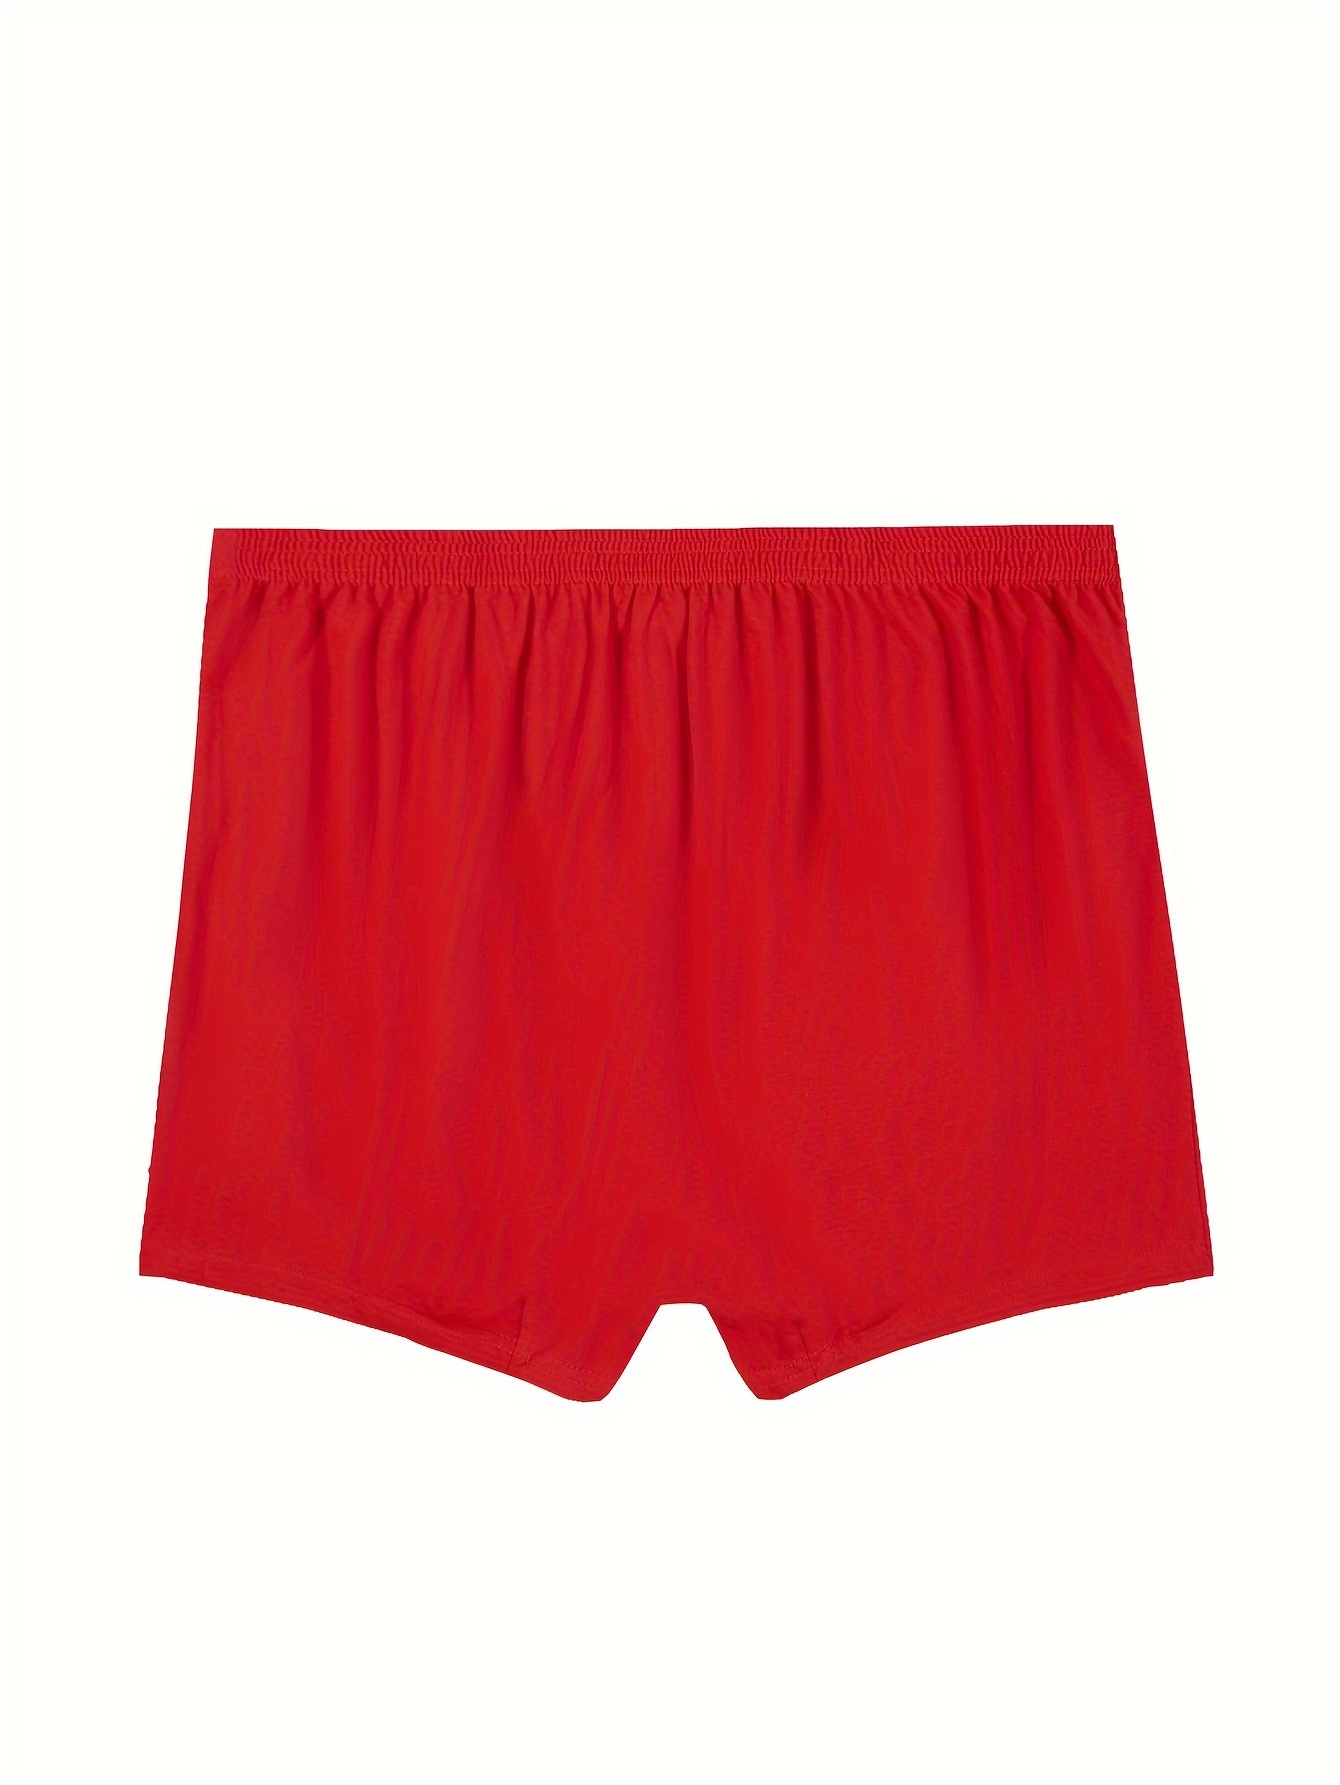 Men's Cotton Loose Breathable Comfy Boxer Briefs Shorts - Temu